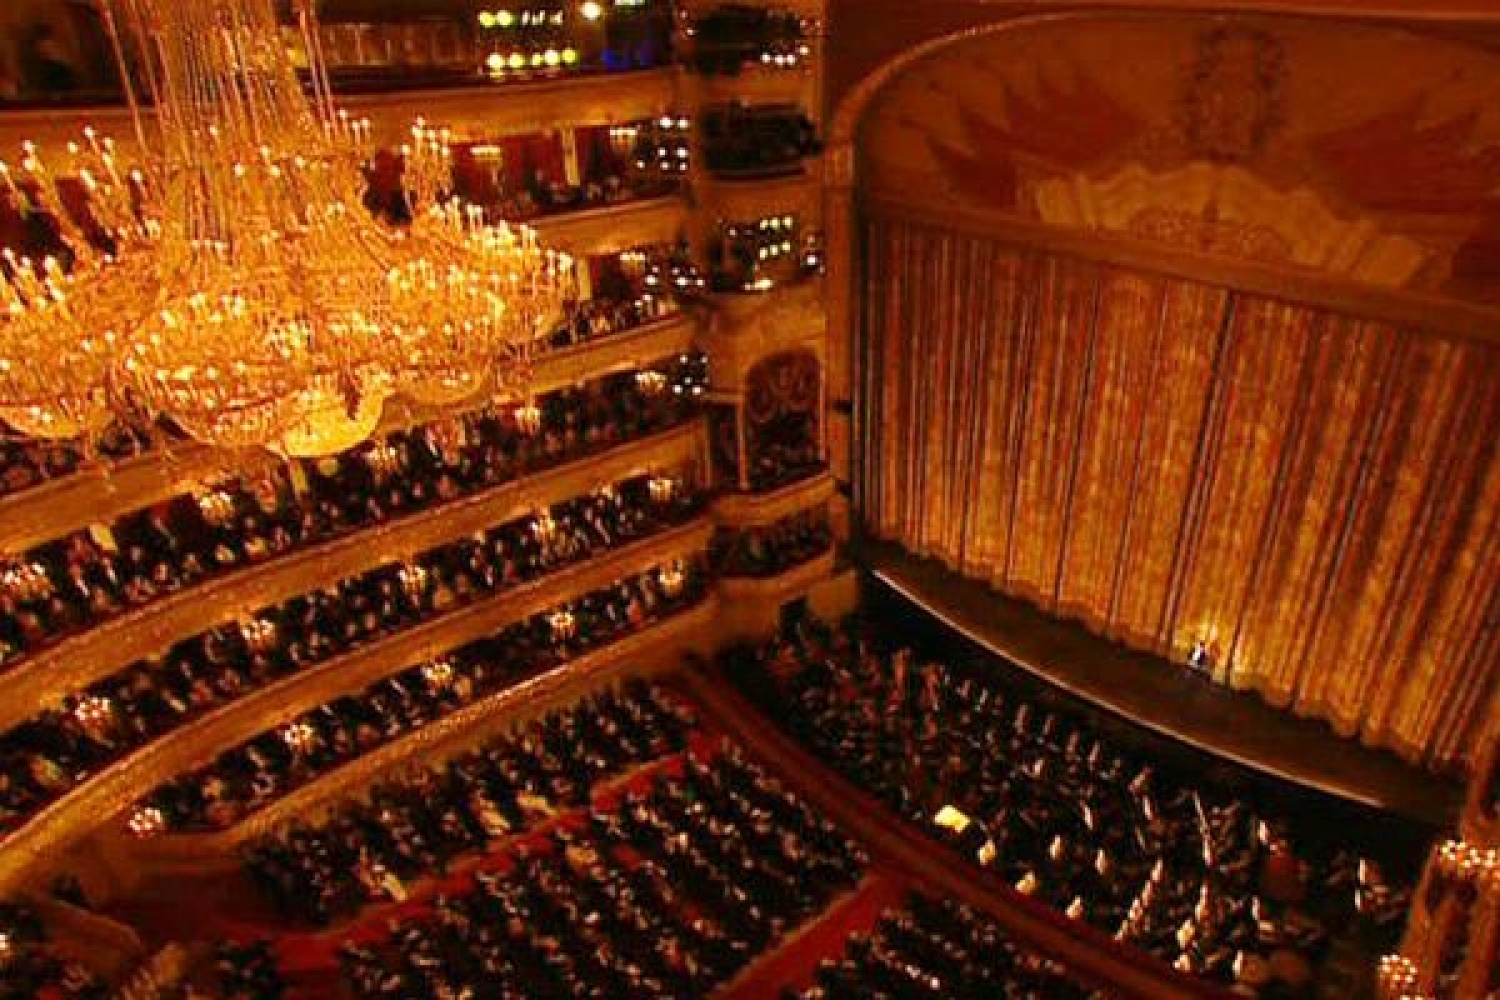 Большой театр зал фото историческая сцена